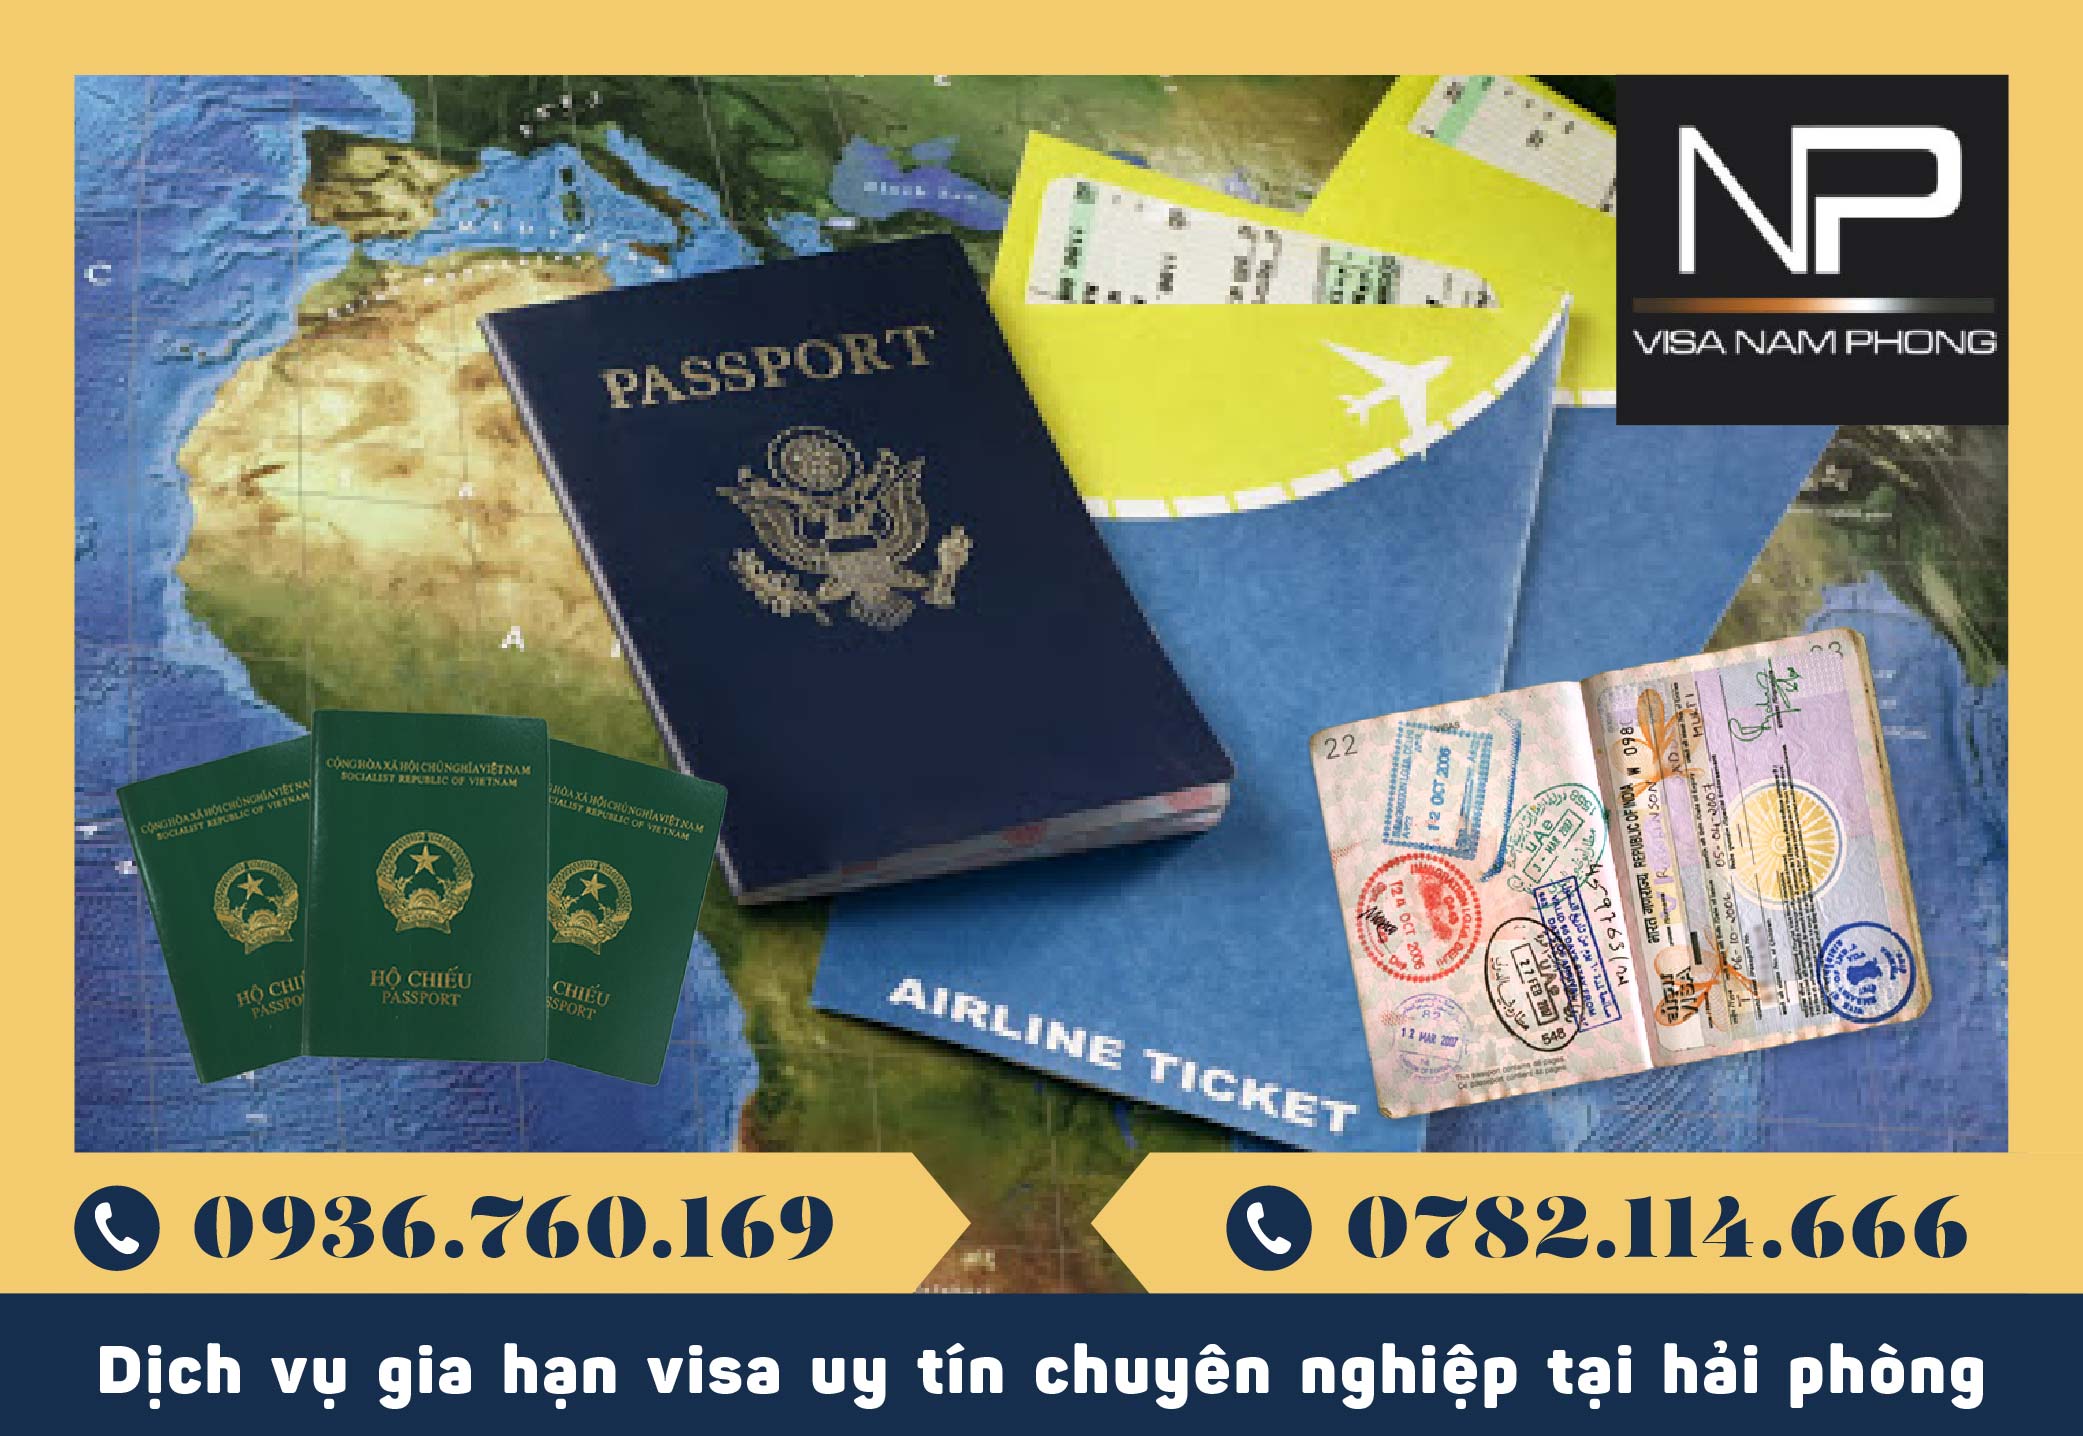 Dịch vụ gia hạn visa uy tín chuyên nghiệp tại hải phòng